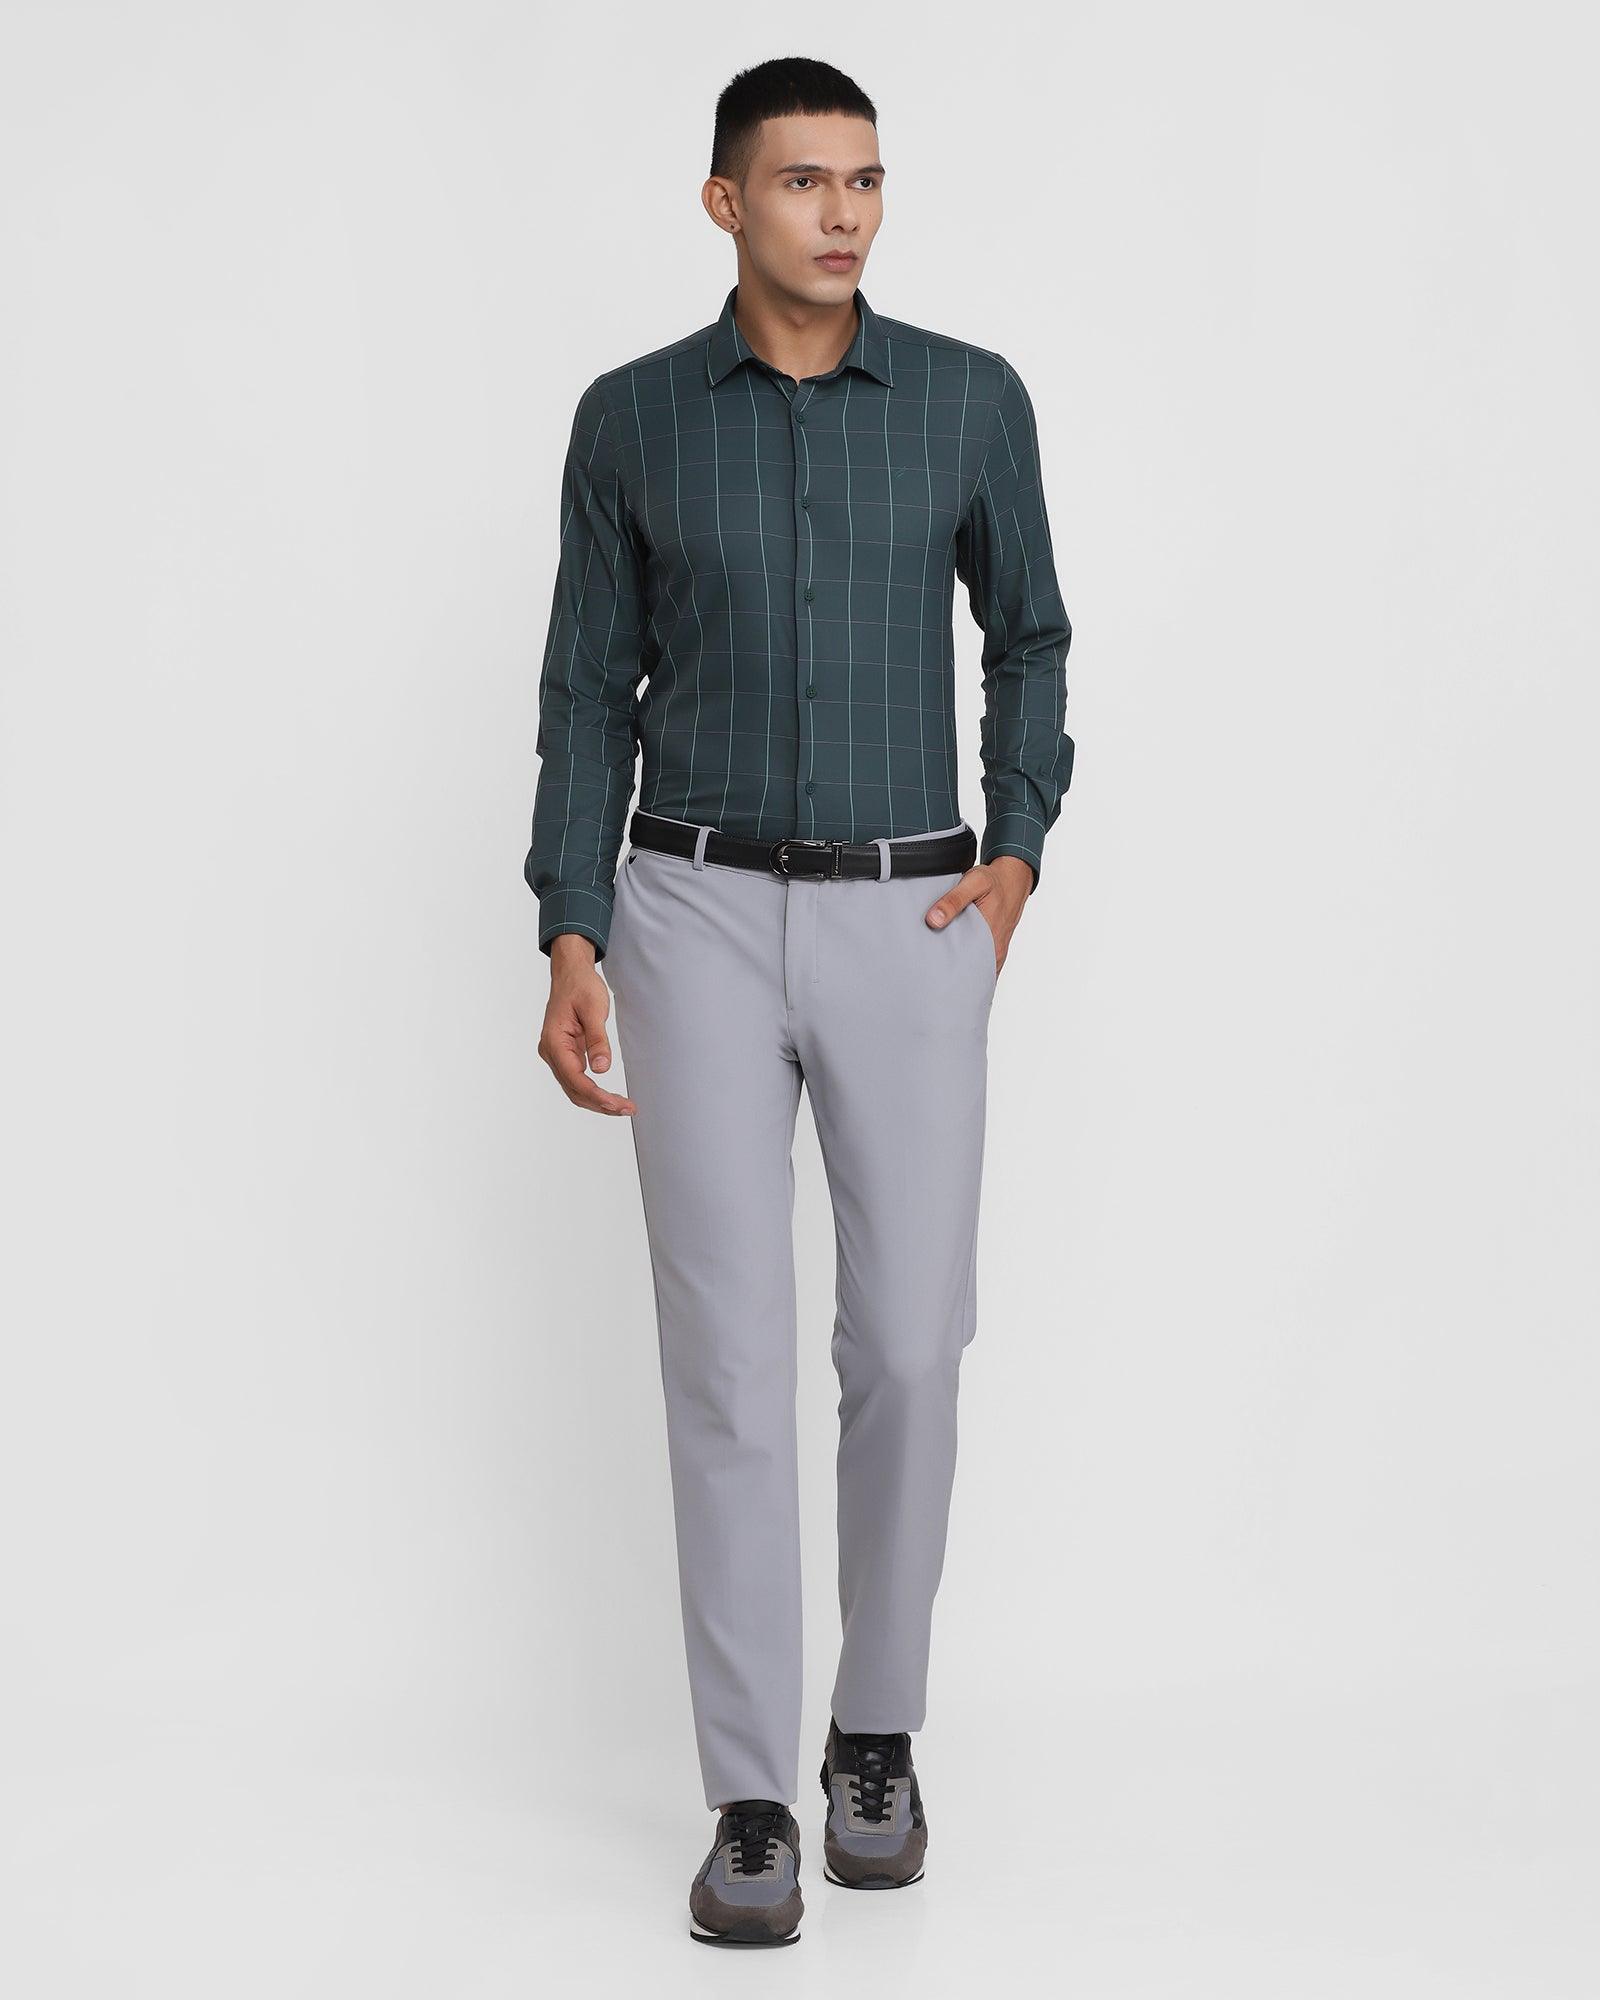 techpro formal trousers in grey b 91 ashley blackberrys clothing 3